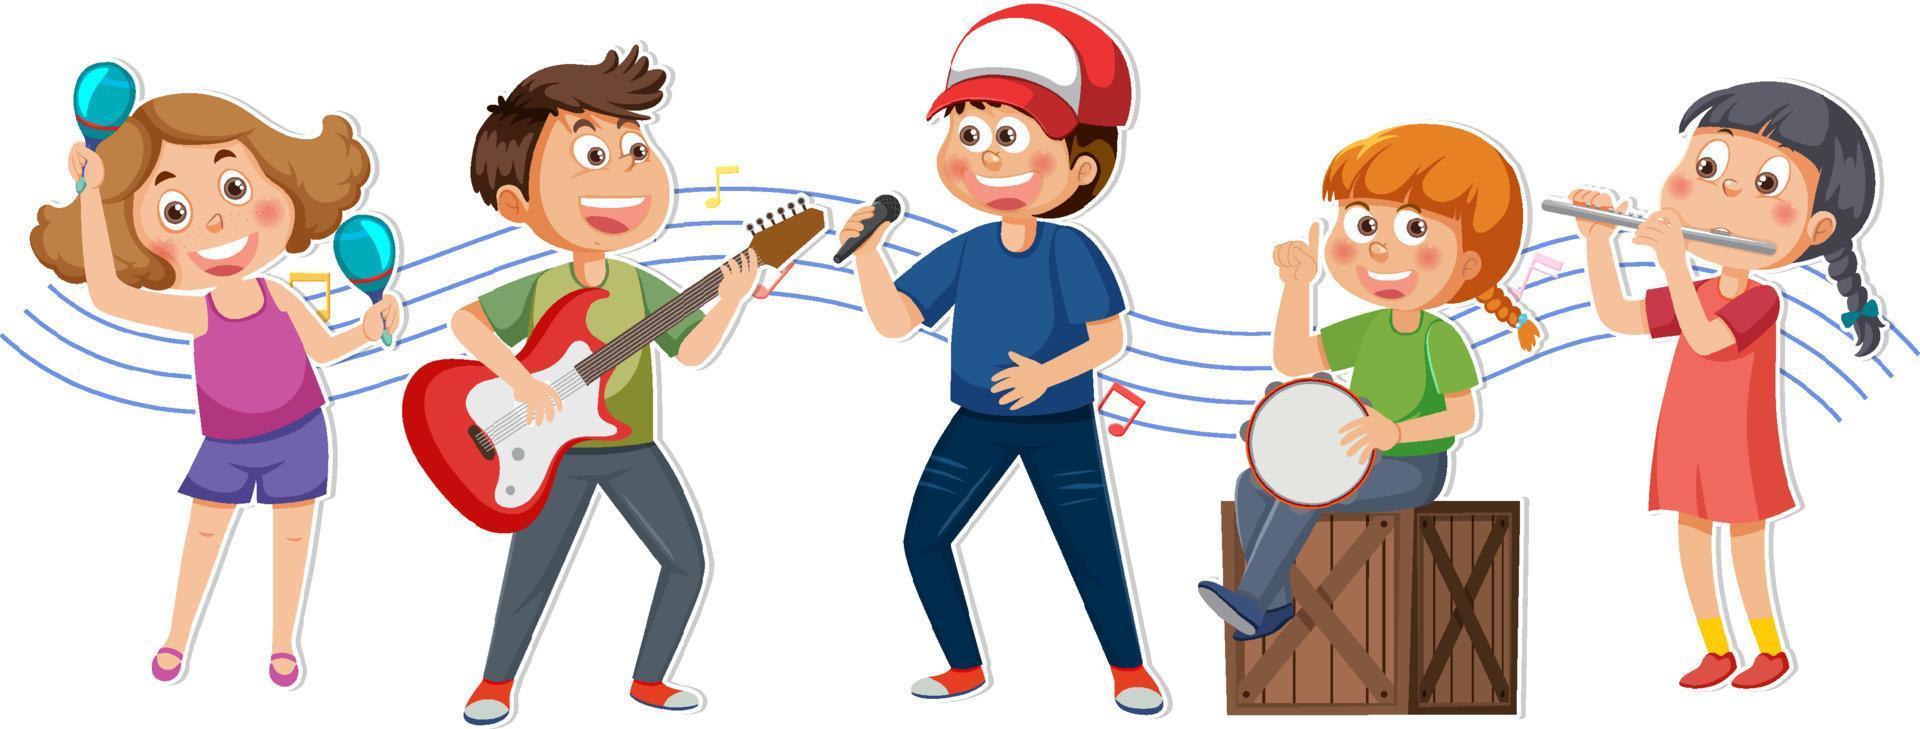 kinderen spelen musical instrument vector